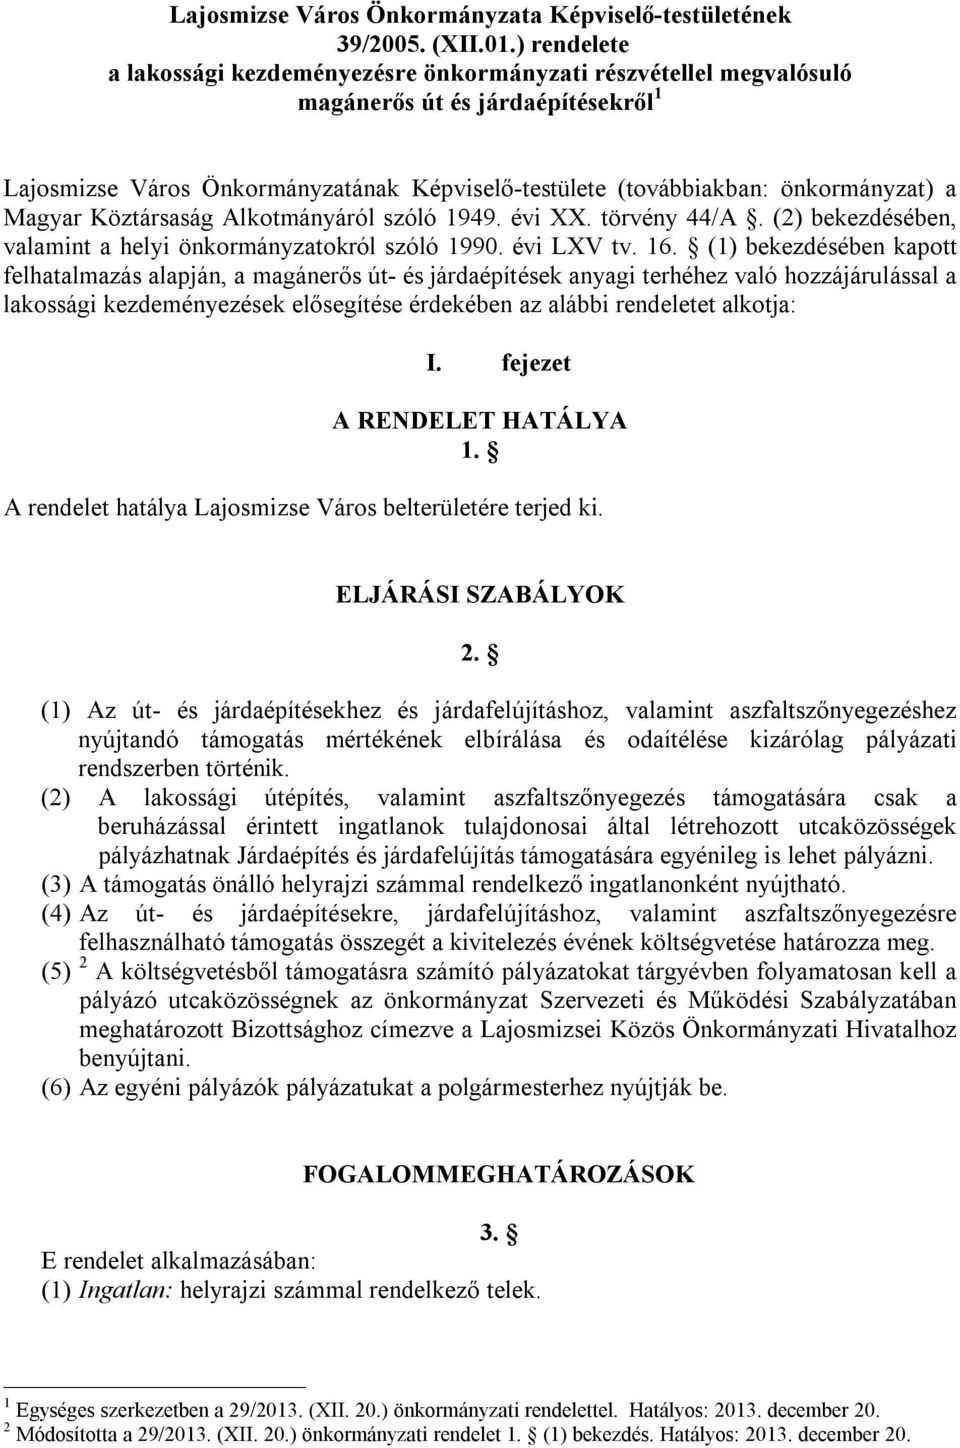 Magyar Köztársaság Alkotmányáról szóló 1949. évi XX. törvény 44/A. (2) bekezdésében, valamint a helyi önkormányzatokról szóló 1990. évi LXV tv. 16.